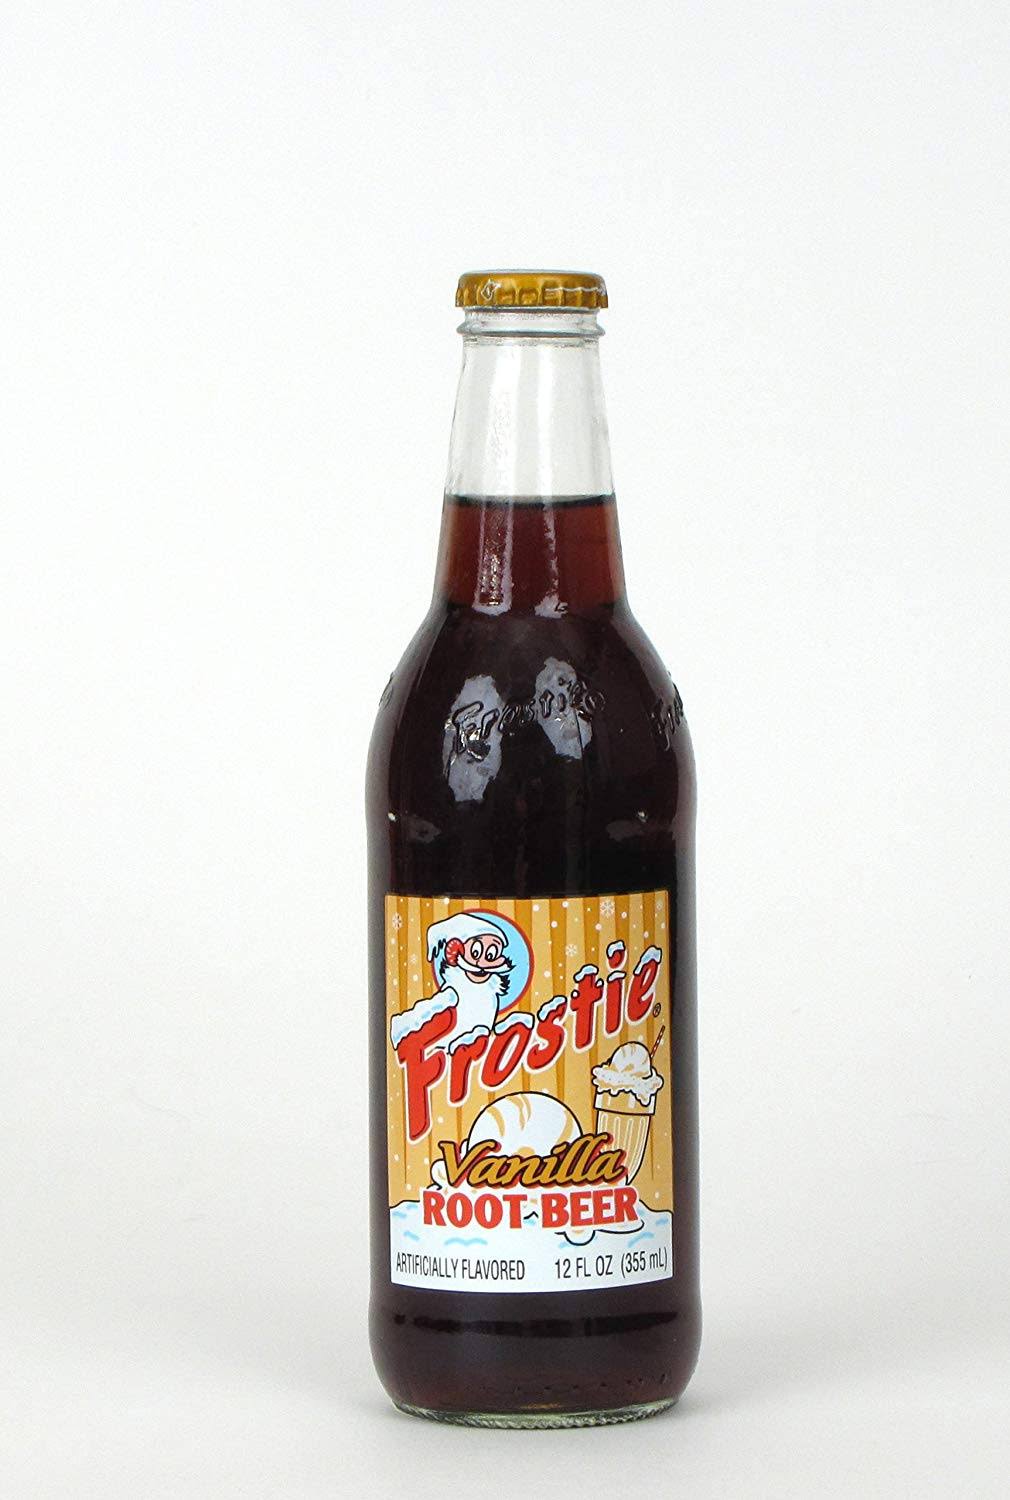 Frostie Root Beer - Vanilla, 12oz